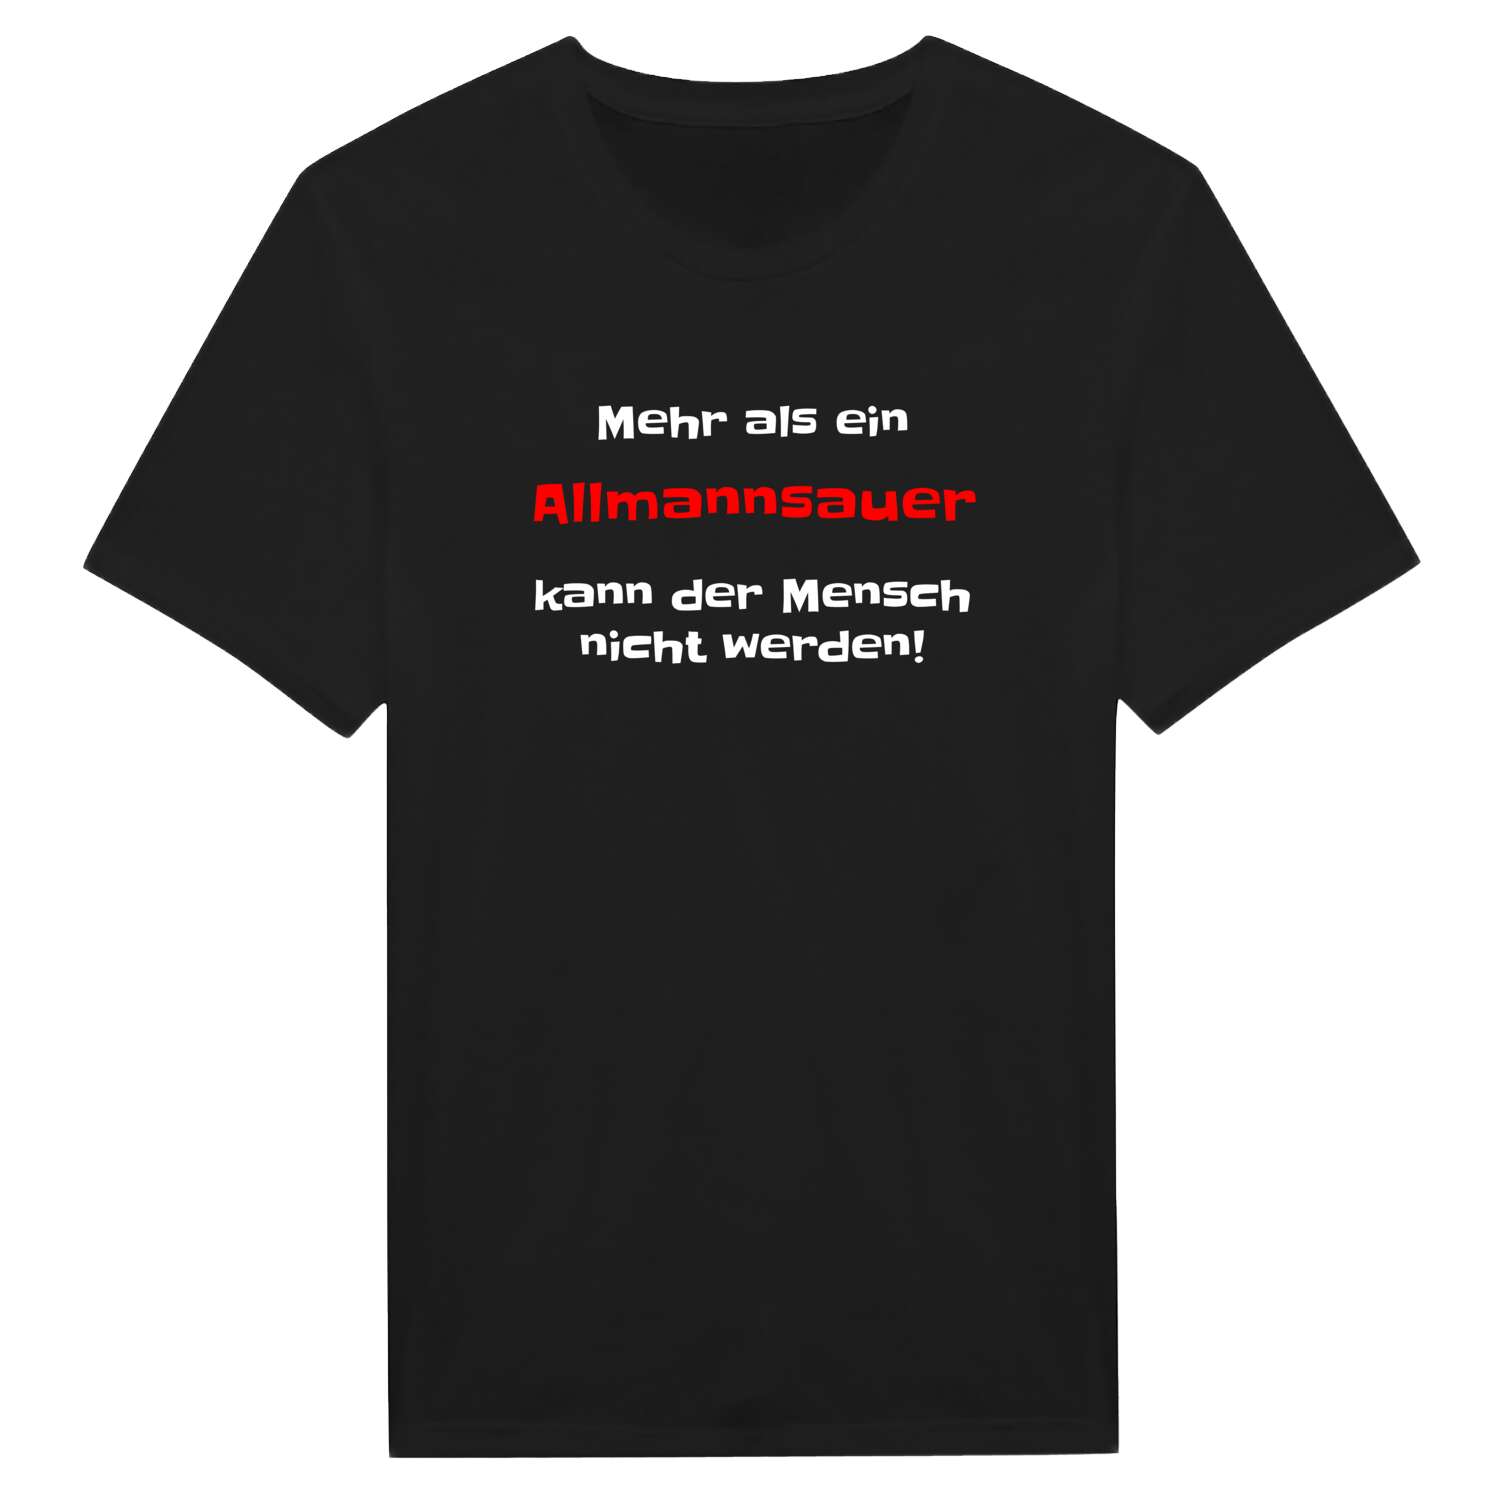 Allmannsau T-Shirt »Mehr als ein«